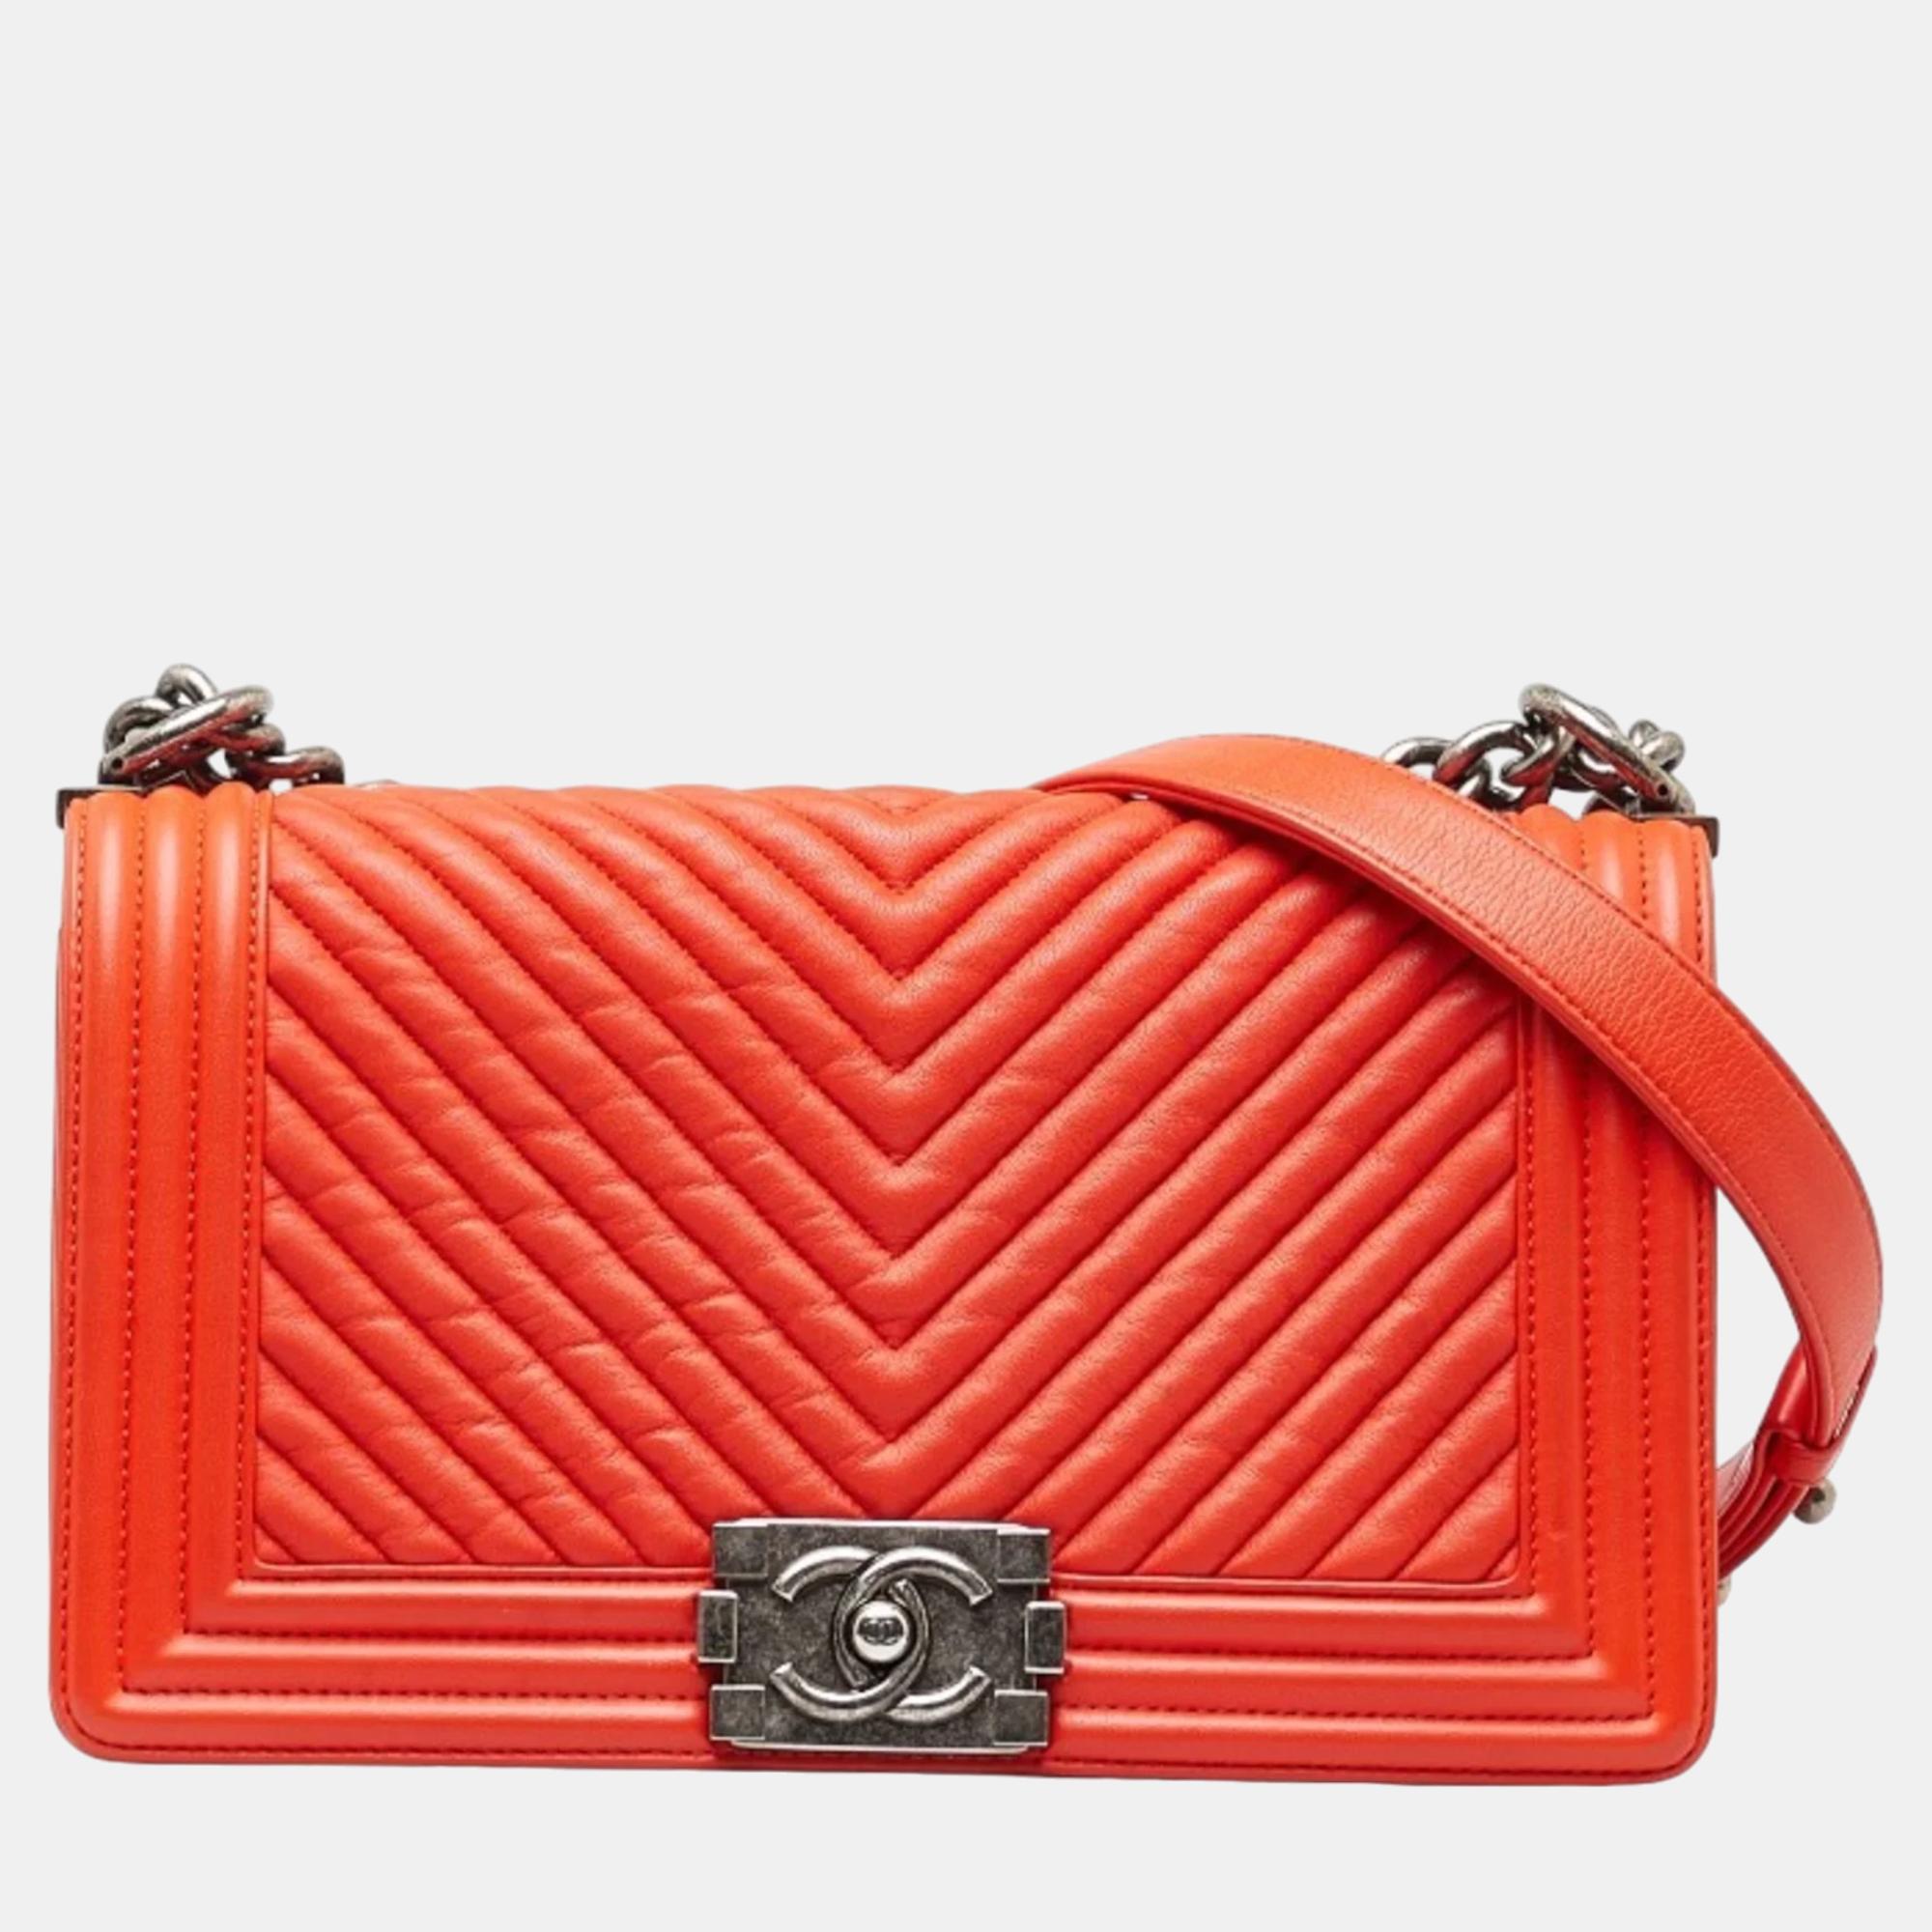 Chanel red leather medium boy bag